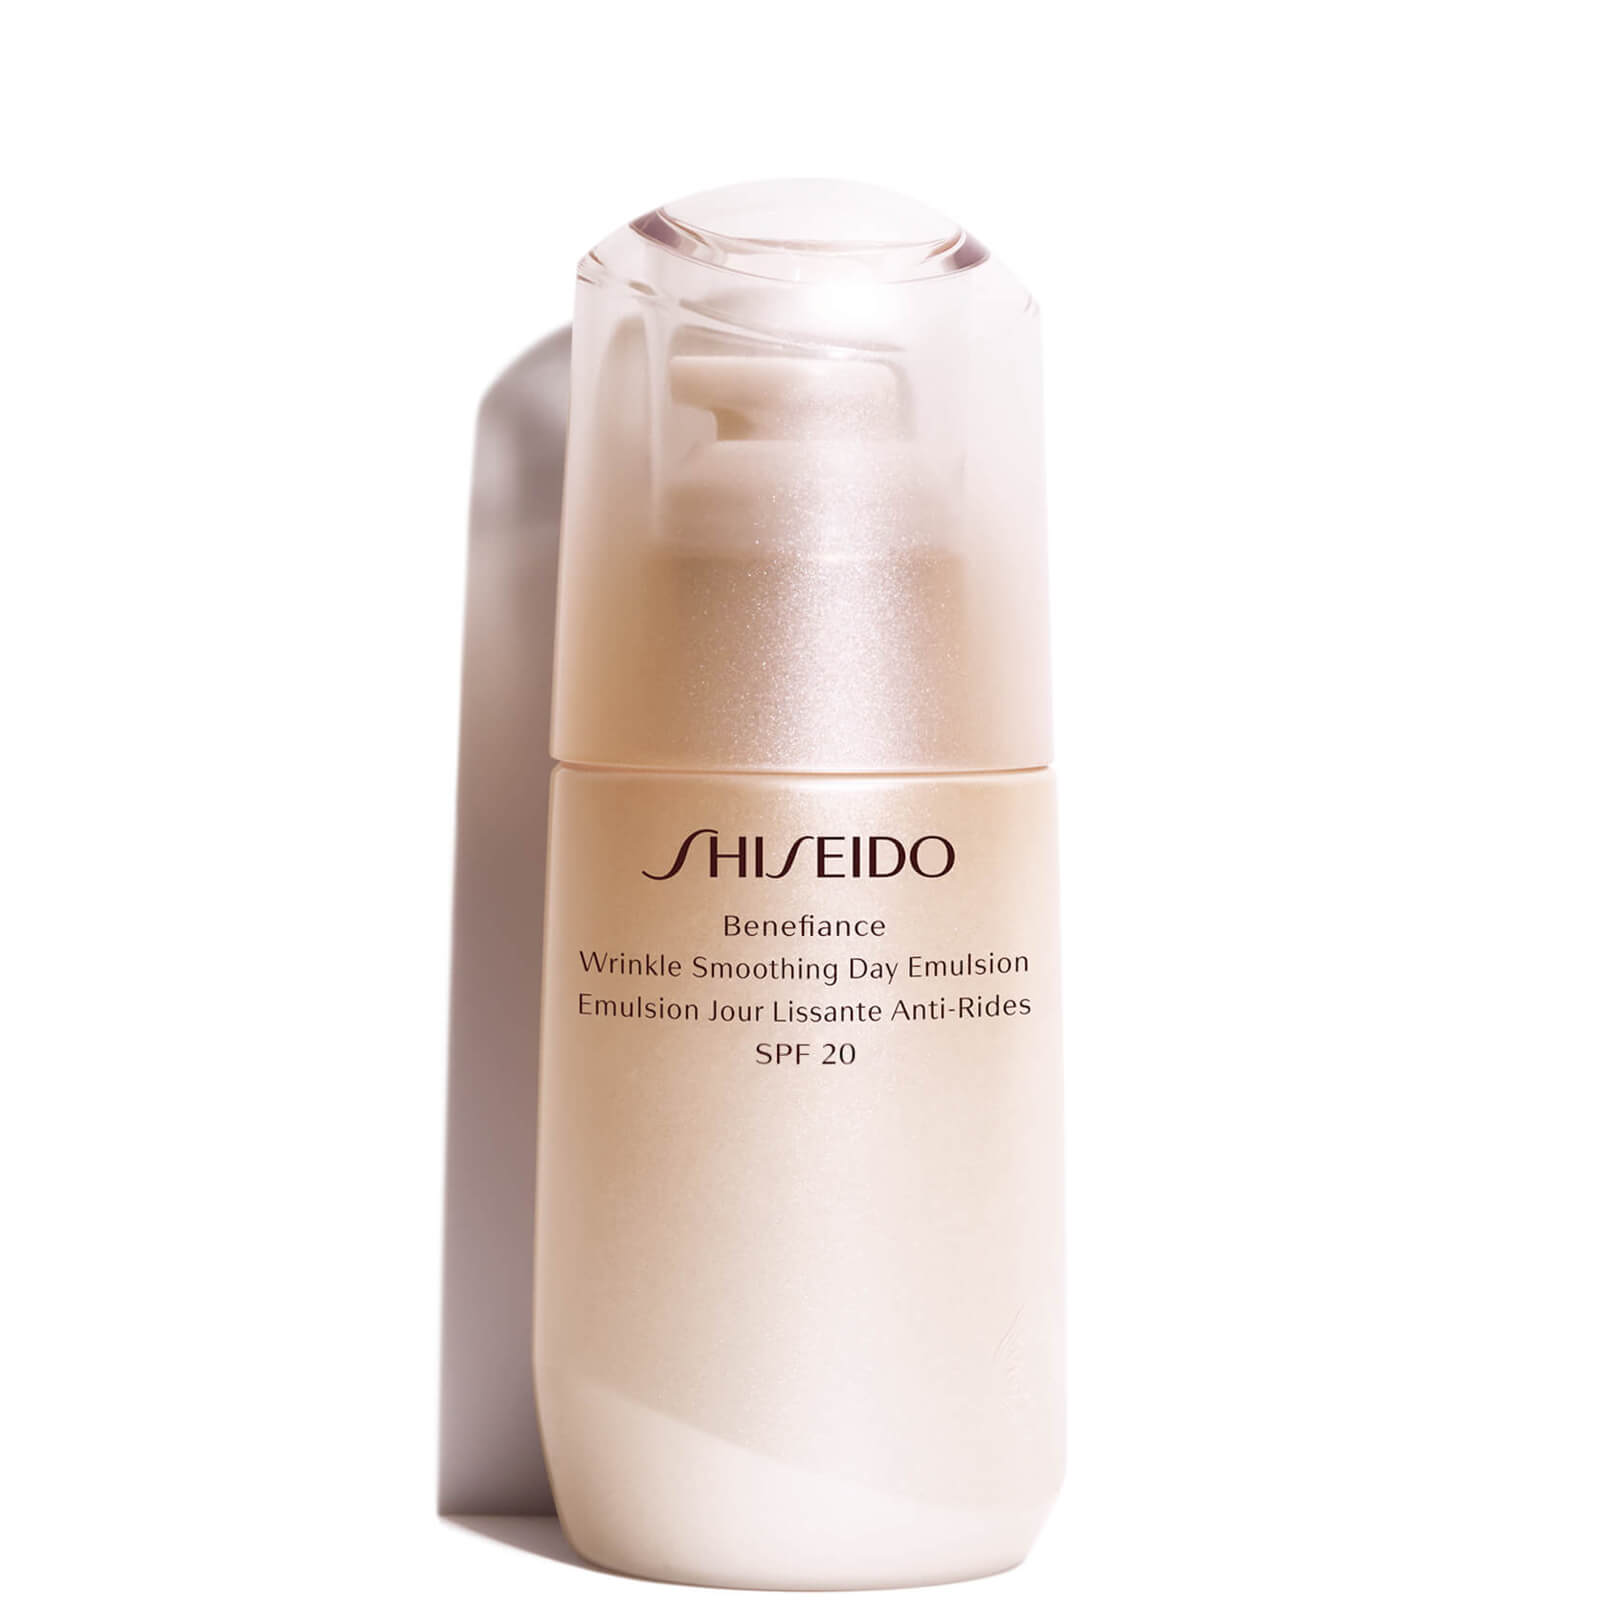 Photos - Cream / Lotion Shiseido Benefiance Wrinkle Smoothing Day Emulsion 75ml 